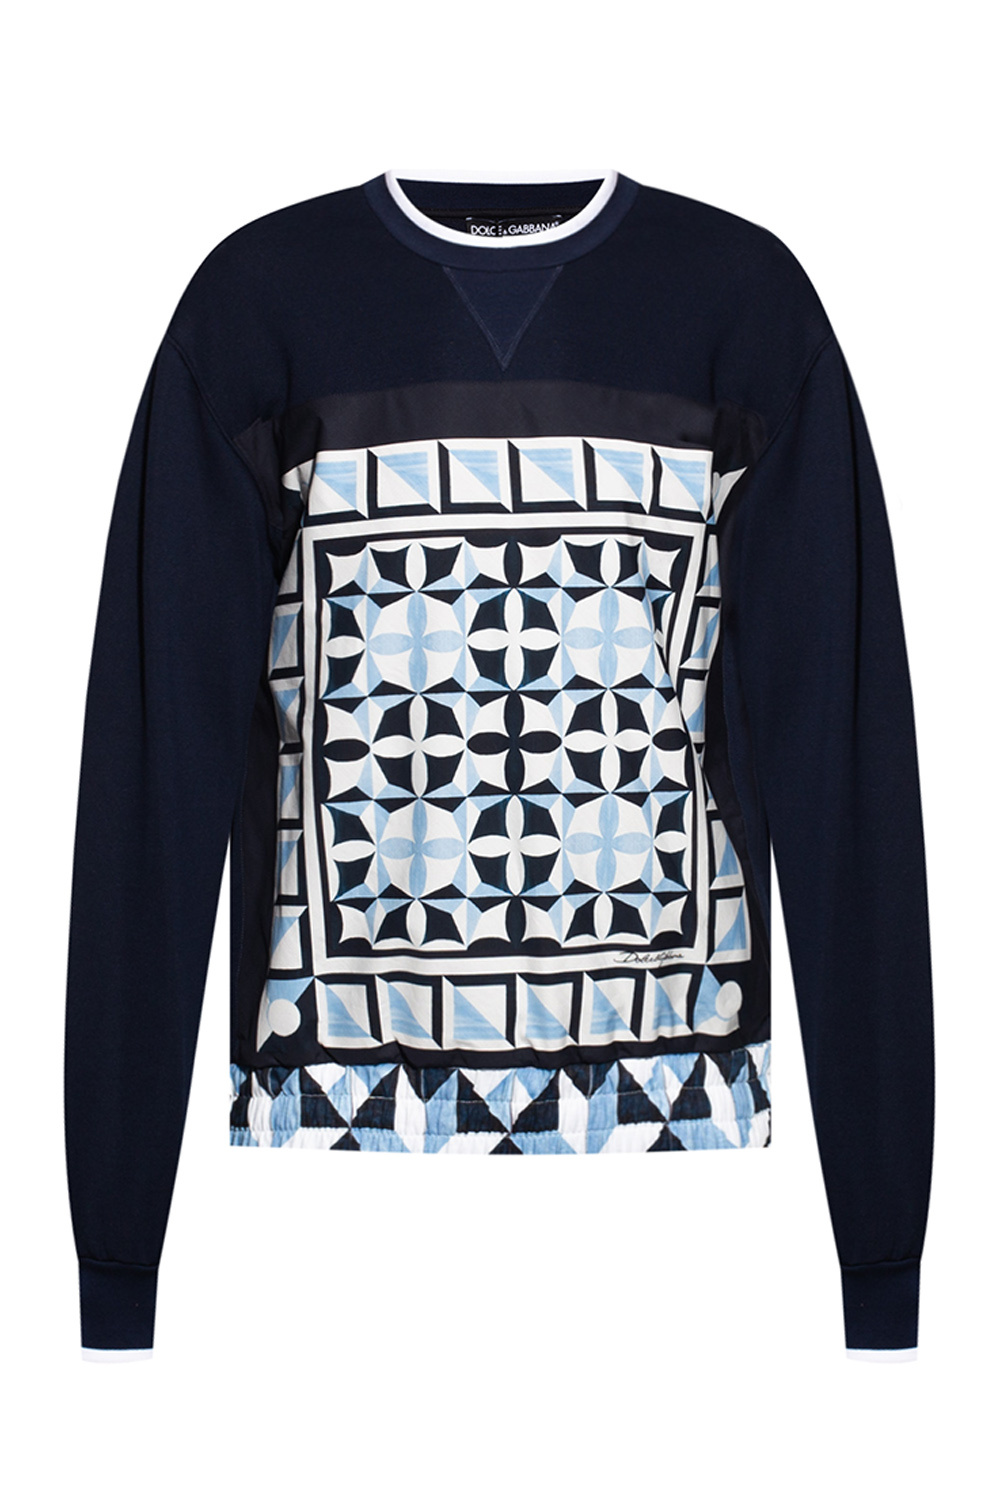 adidas zx flux red mosaic light blue | Dolce & Gabbana Sweatshirt 